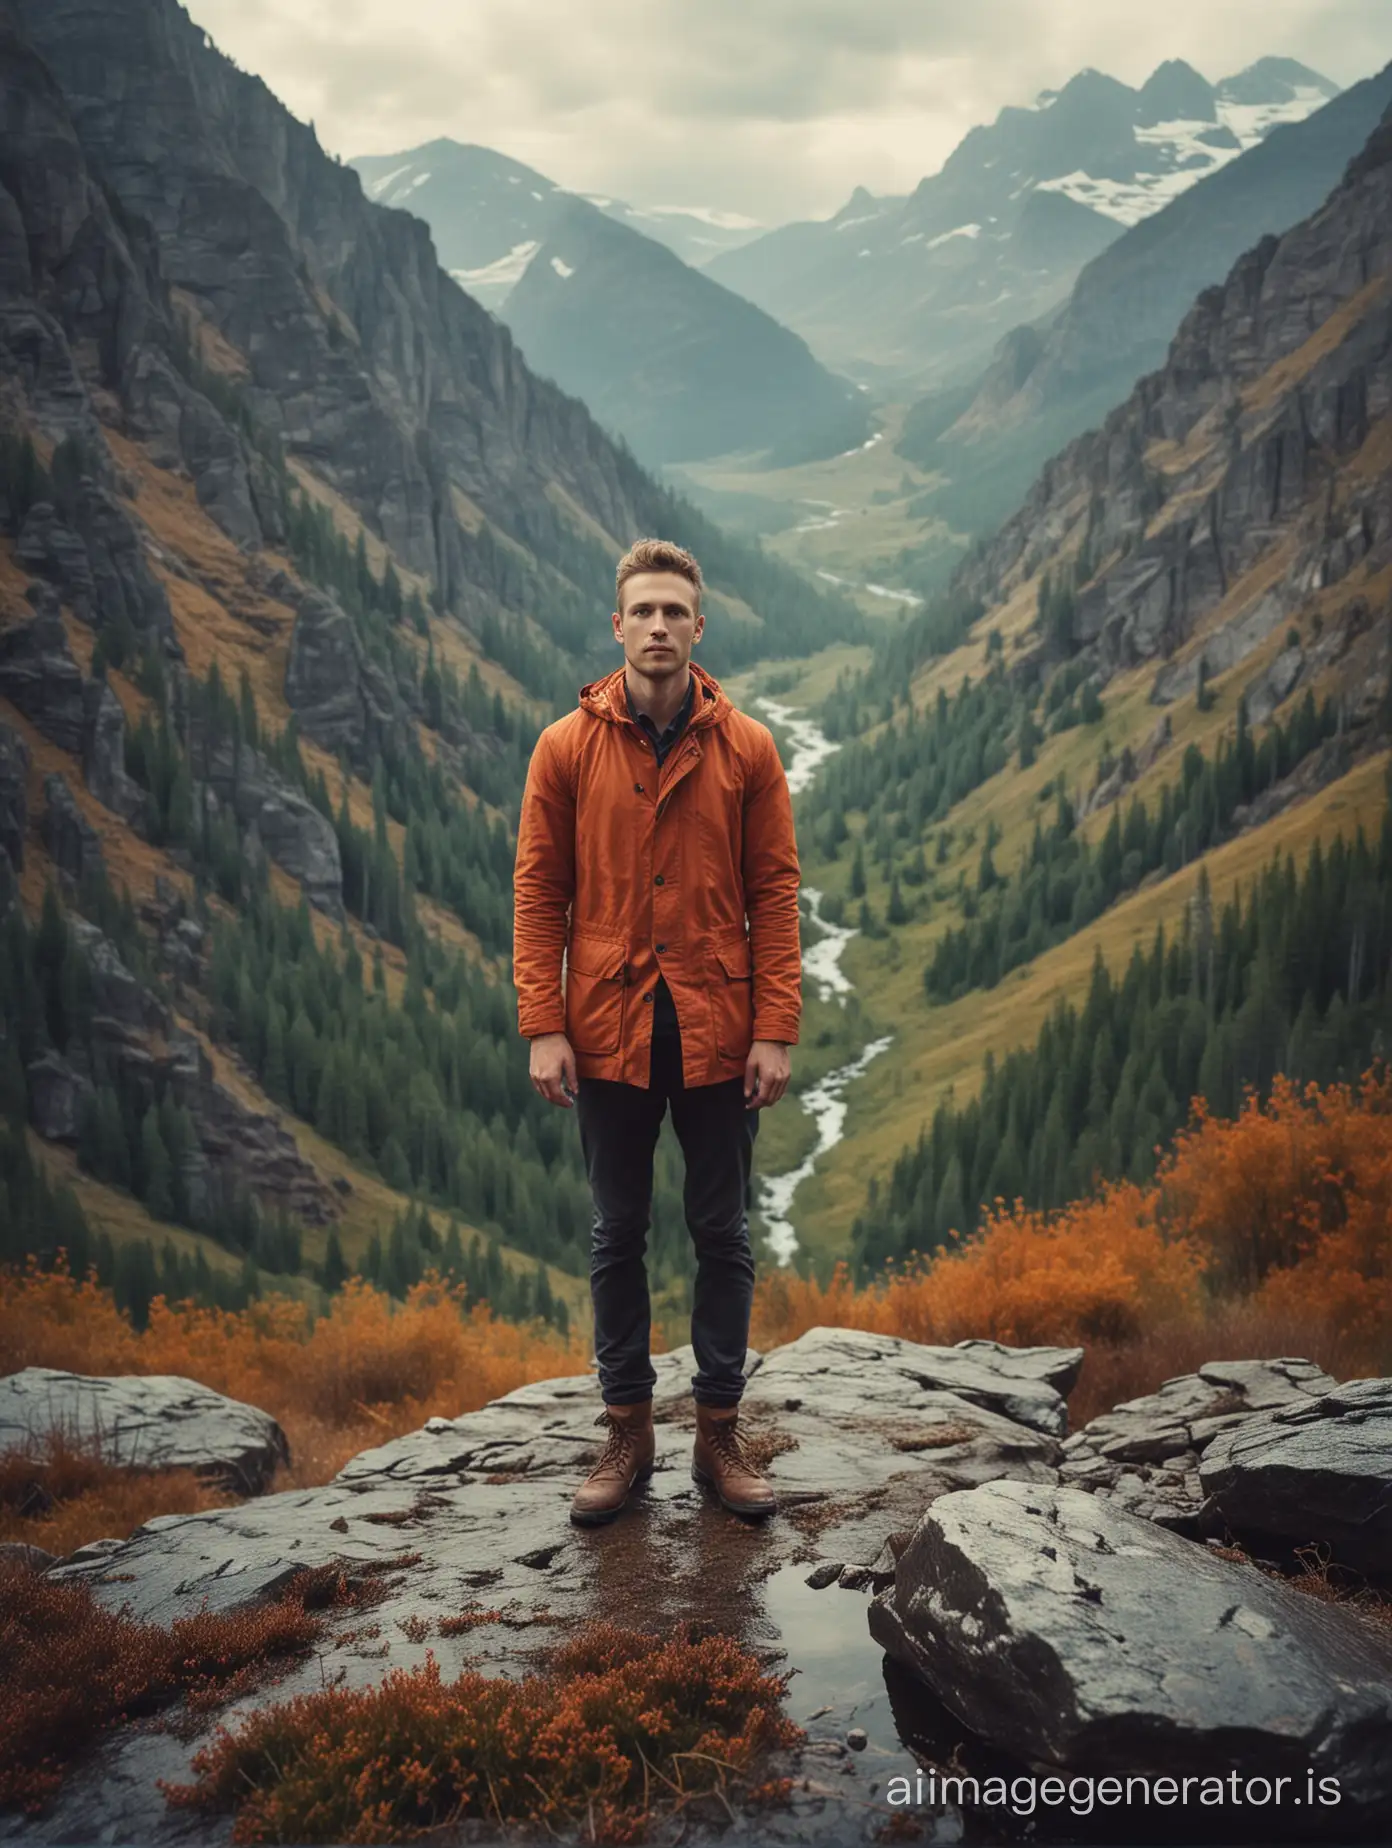 мужчина в горах в стиле фотографа Элизабет Гэдд
